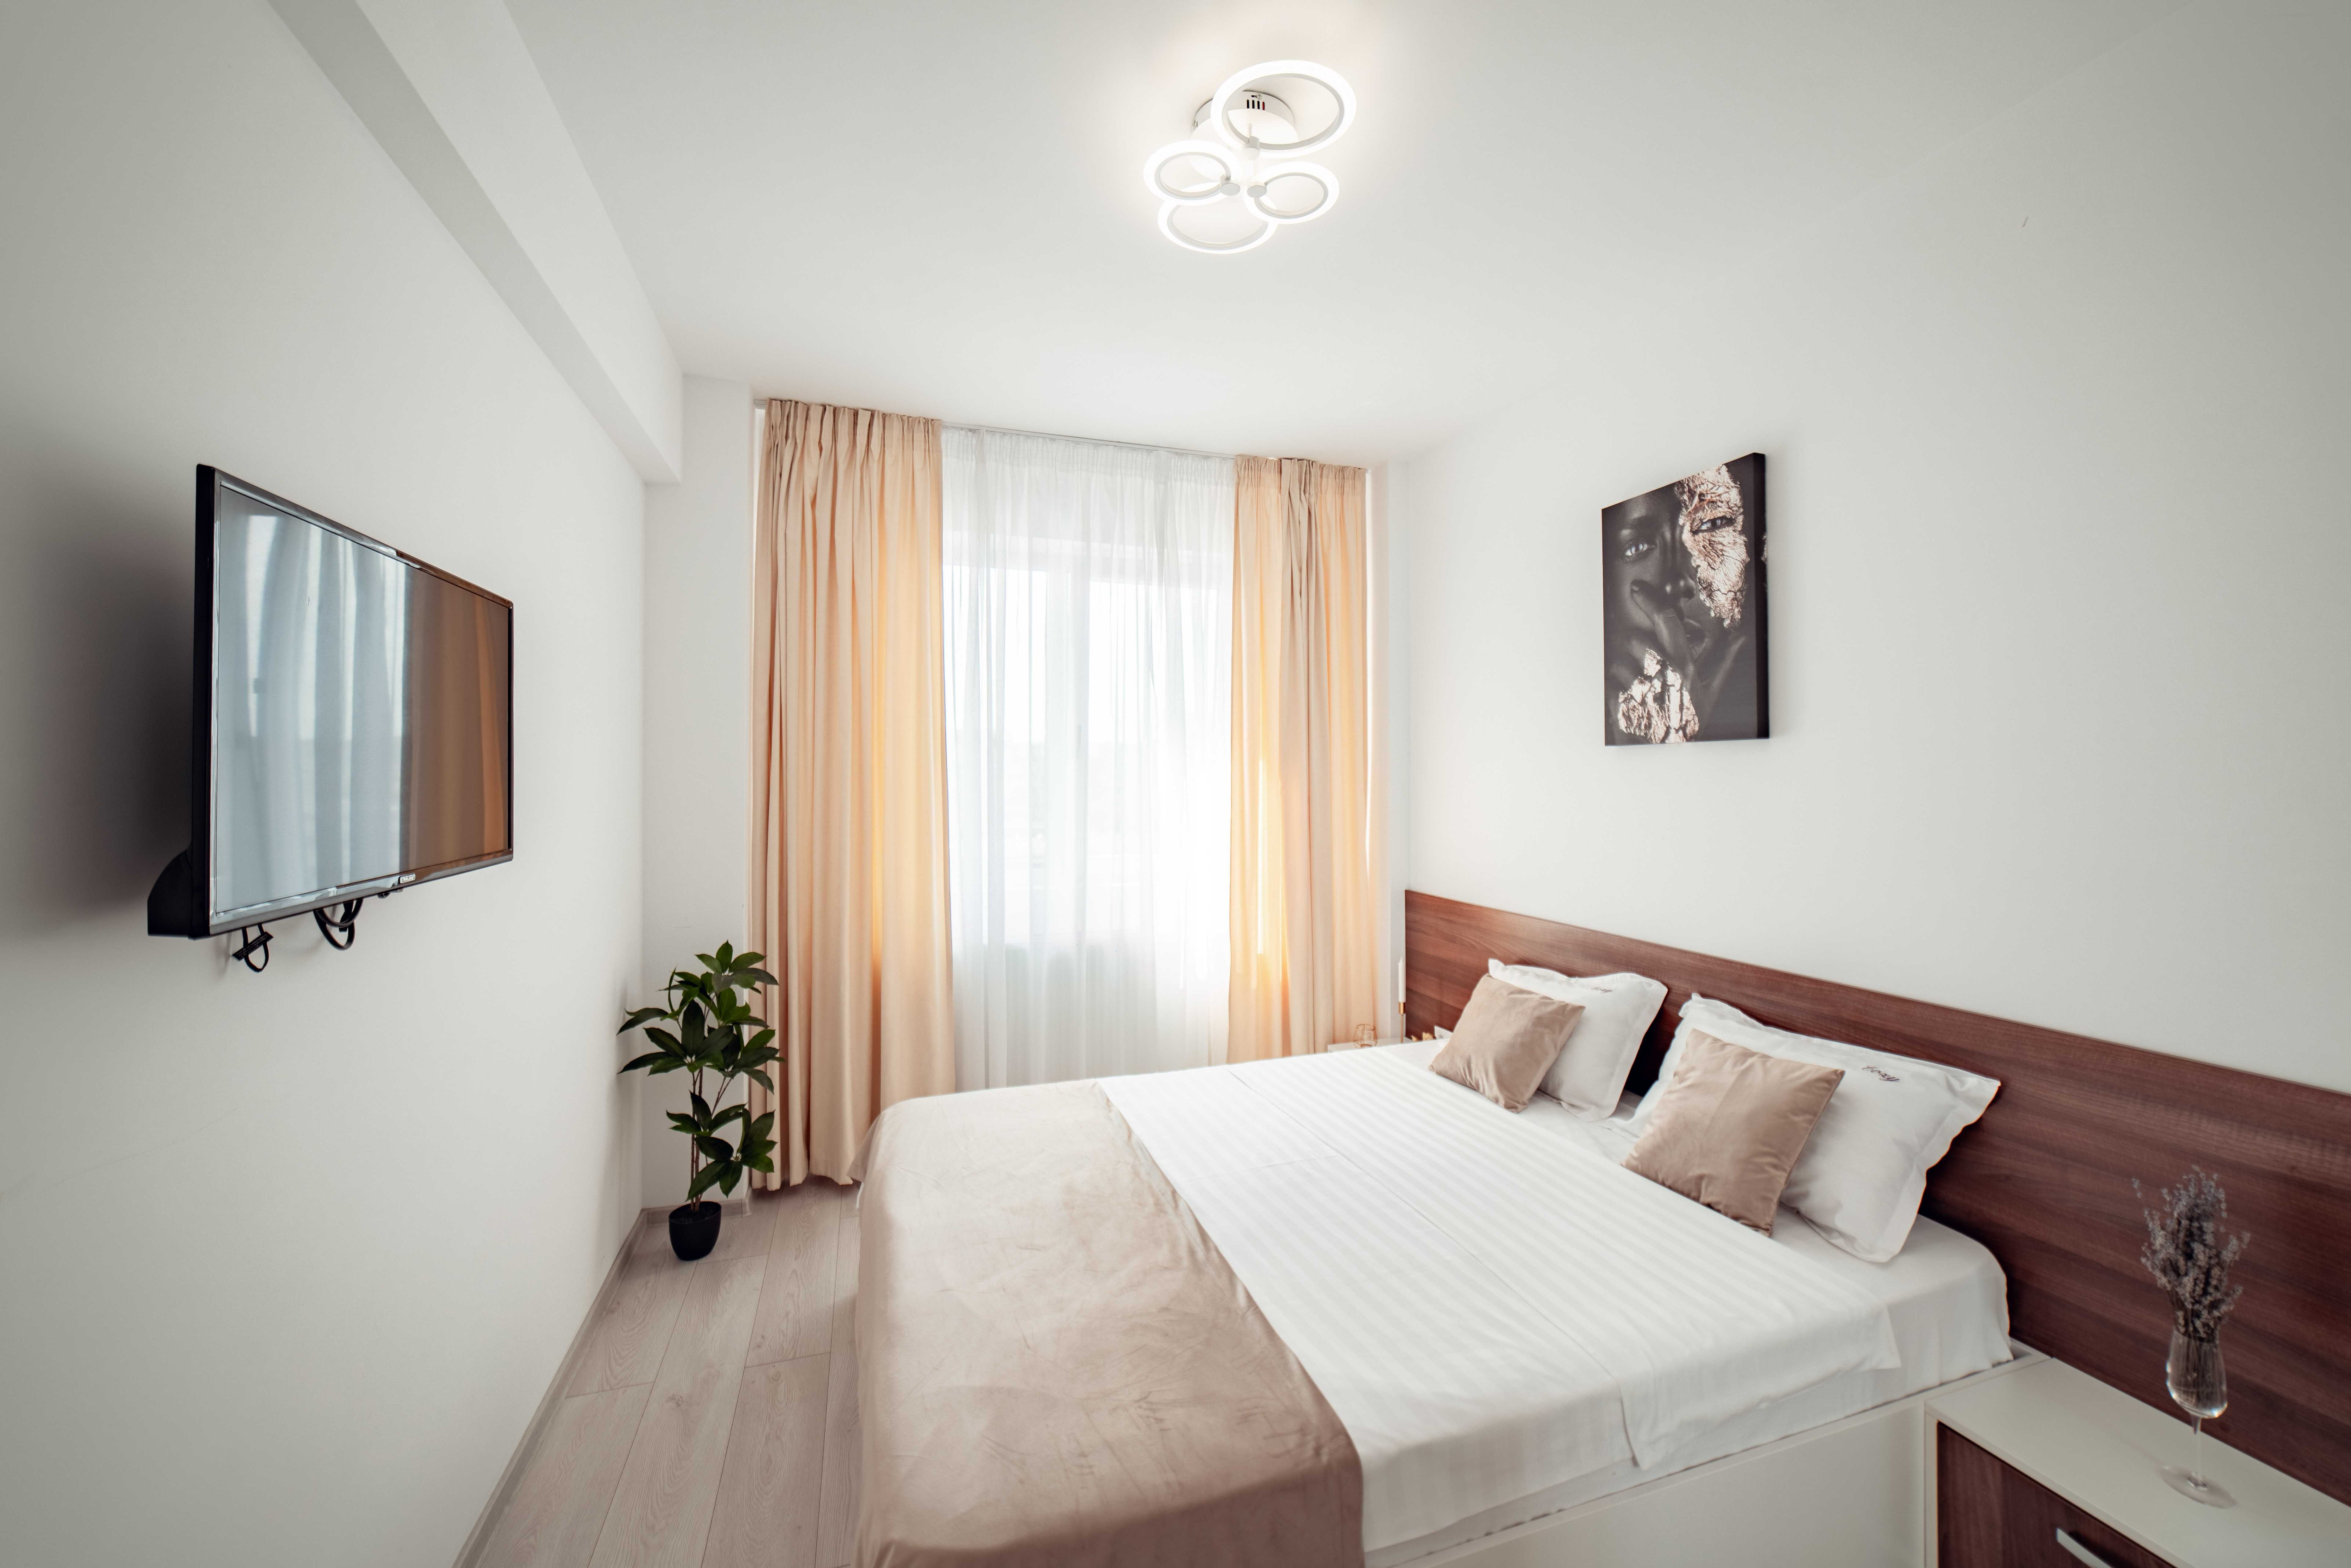 Cazare Apartamente in Regim Hotelier - Brasov